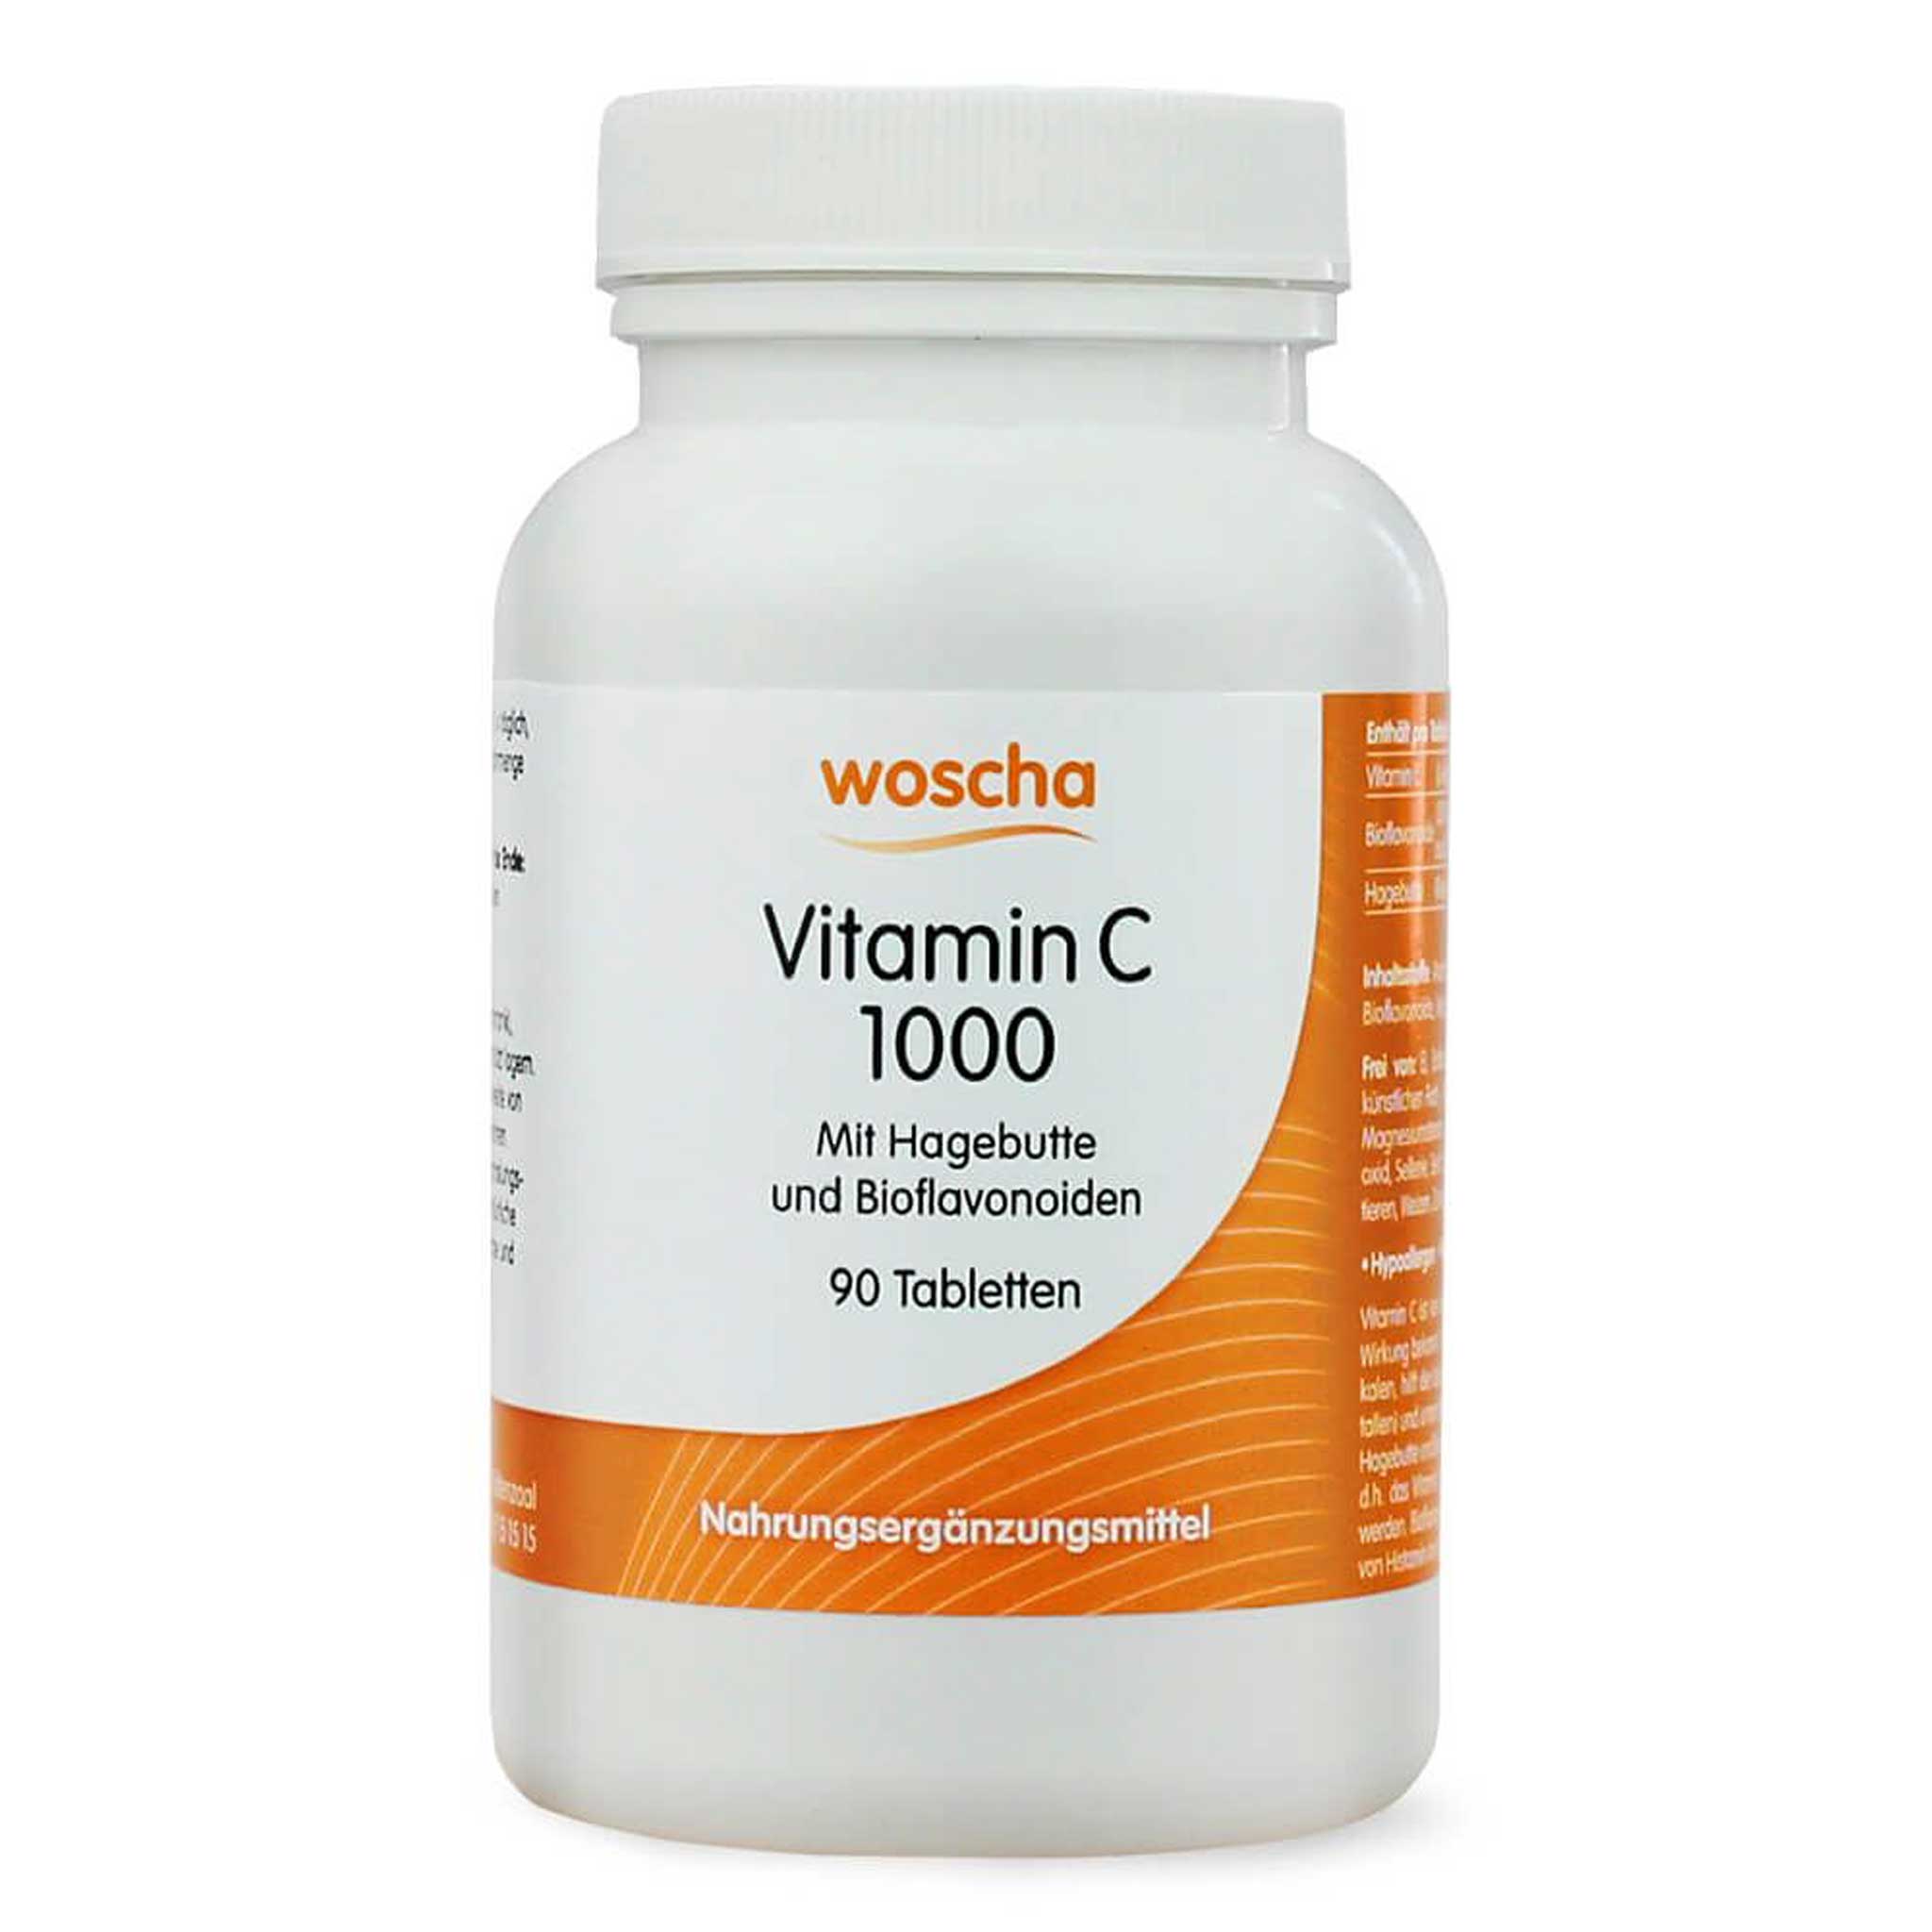 Woscha Vitamin C 1000 mit Hagebutte von podo medi beinhaltet 90 Tabletten